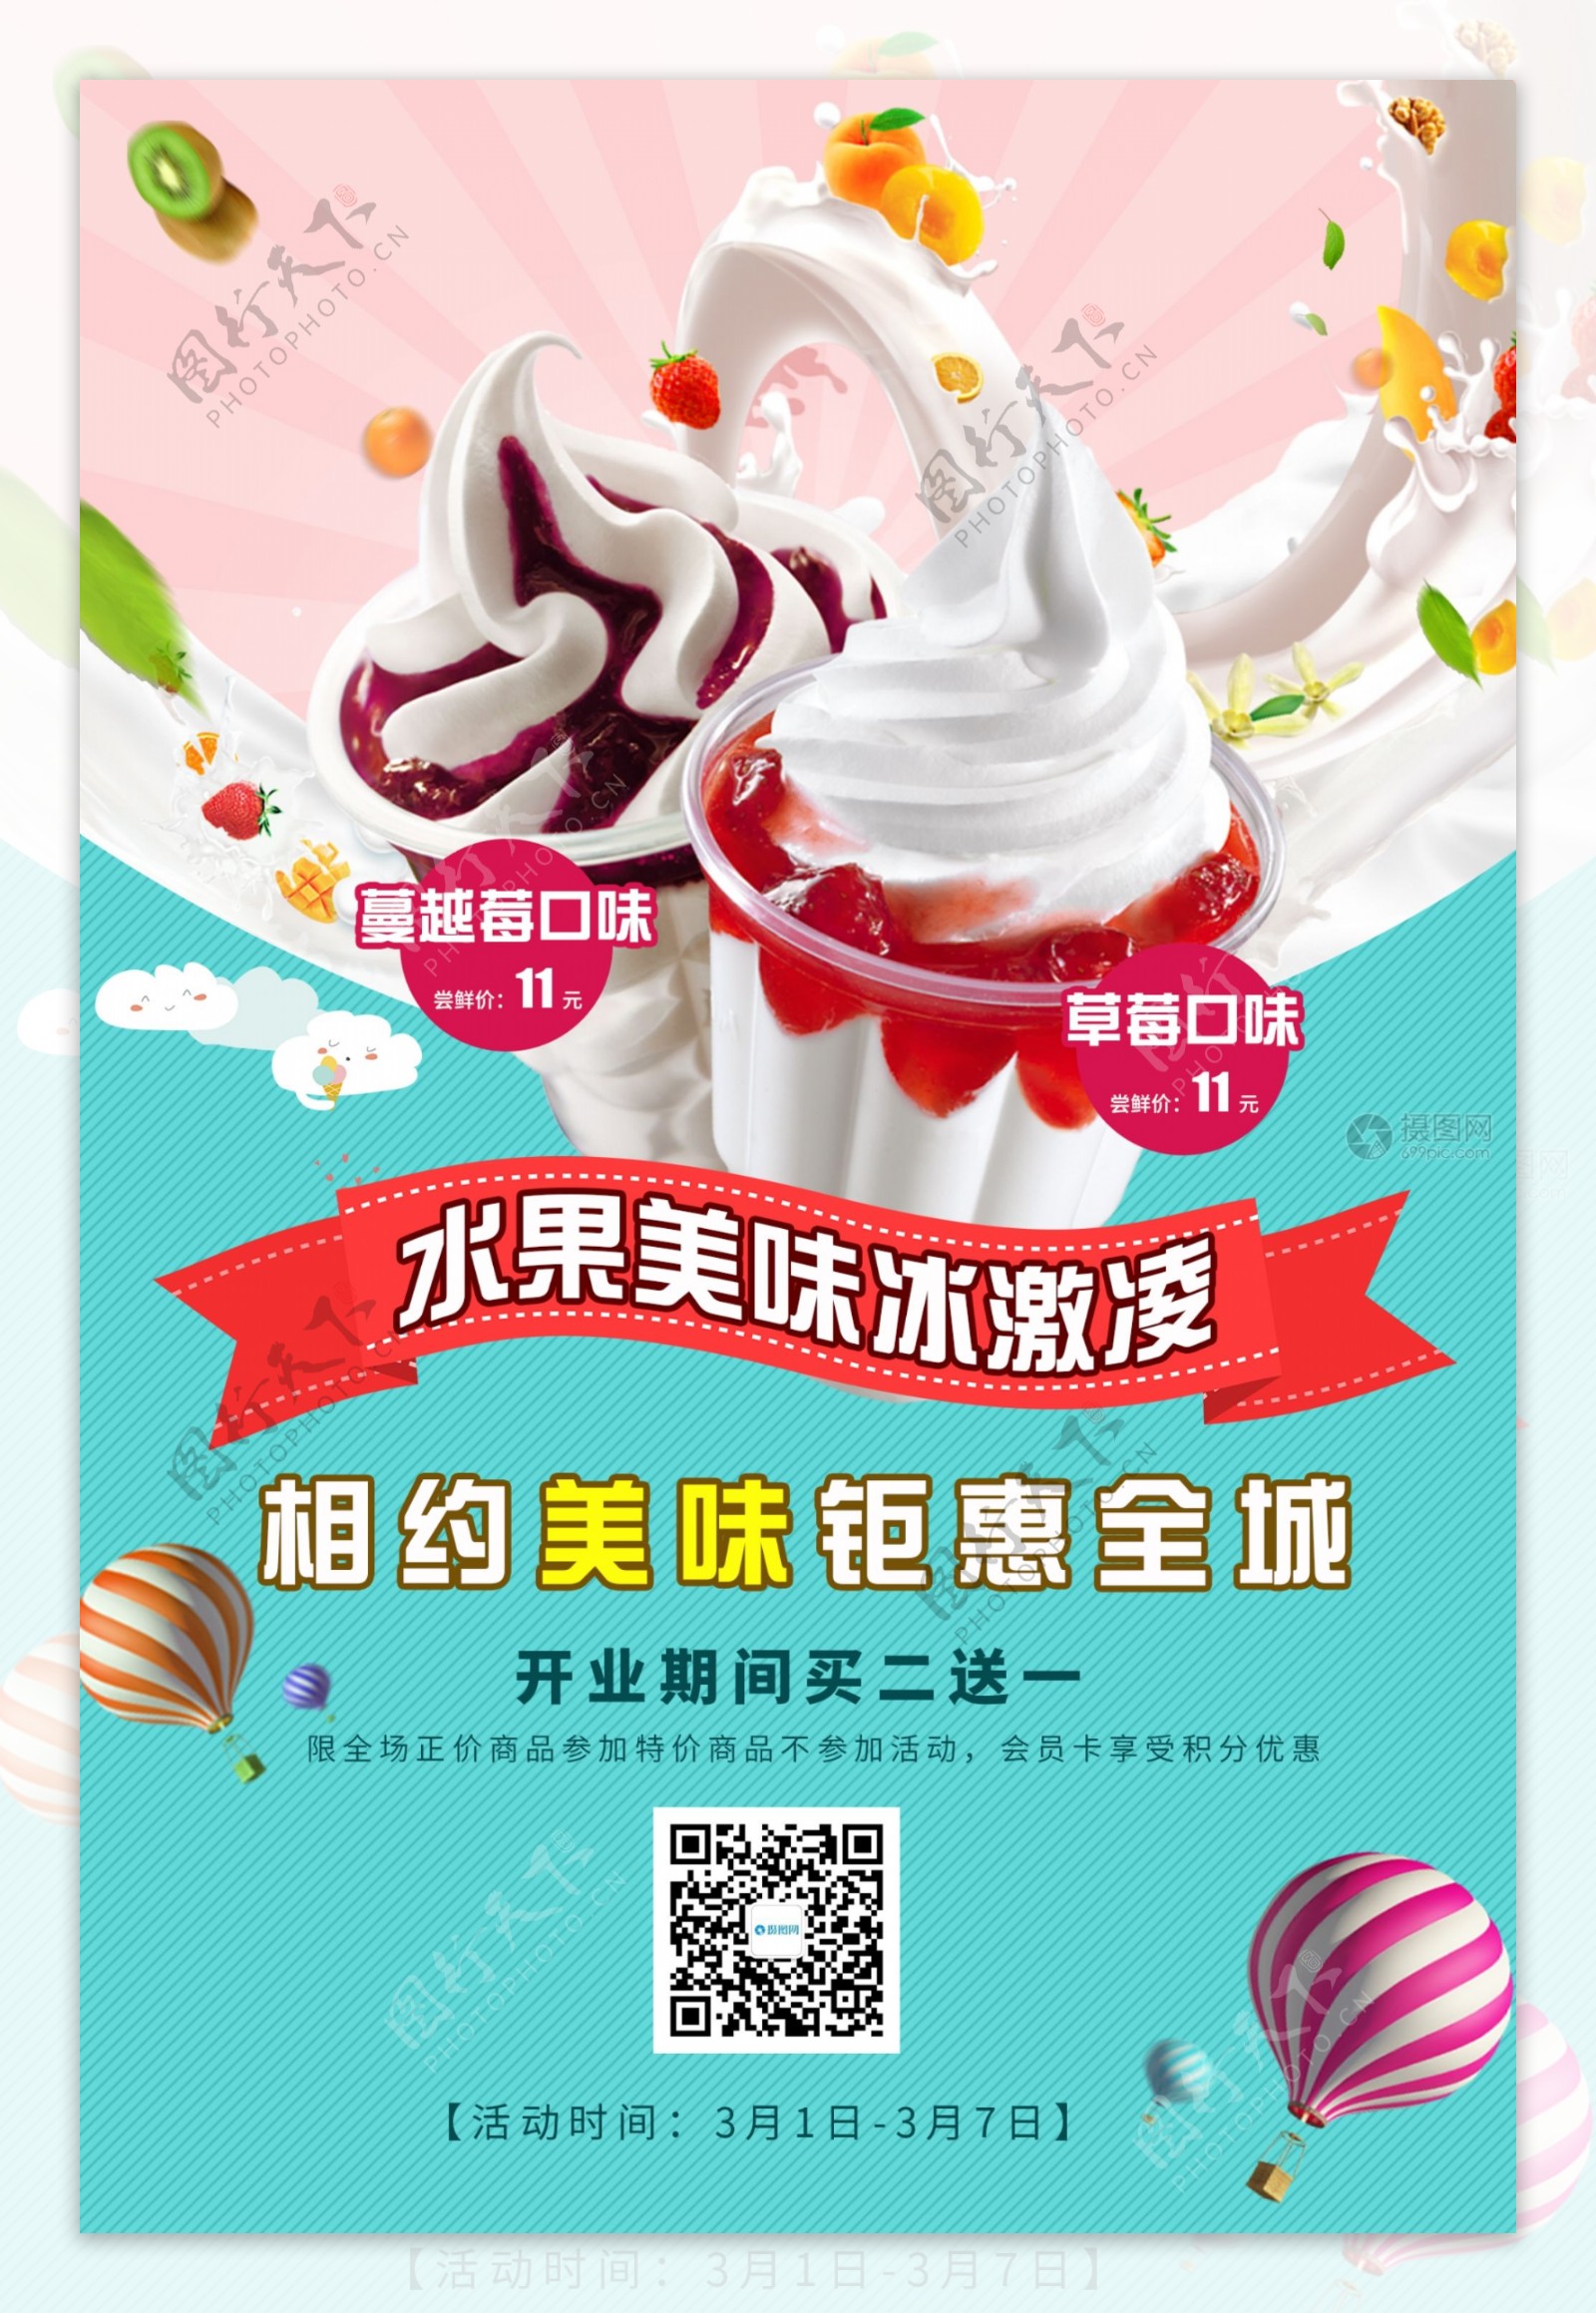 美味冰激凌美食活动促销海报